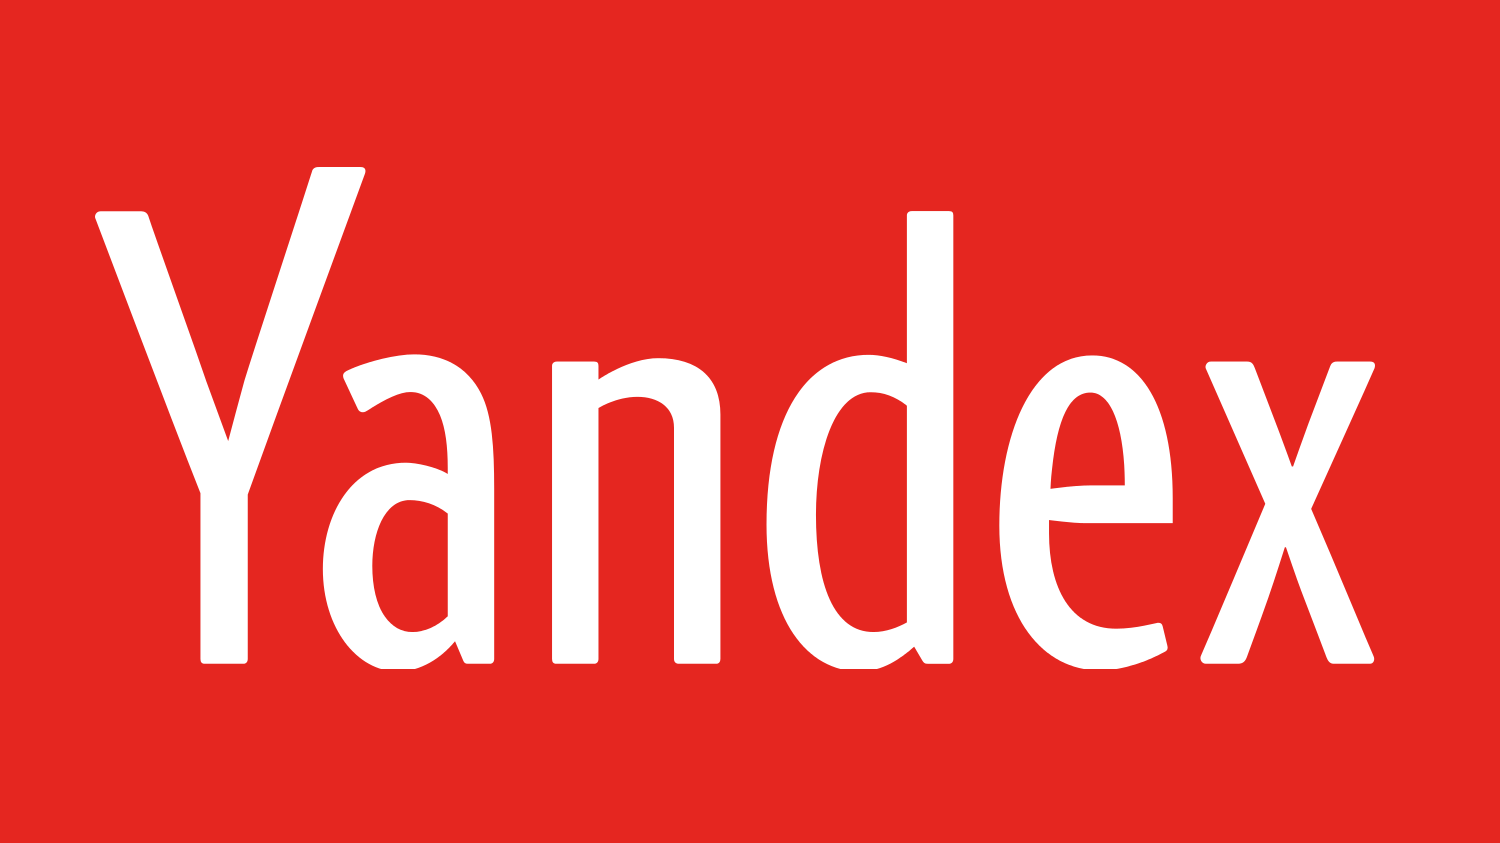 Yandex Logo - Yandex logo | Dwglogo